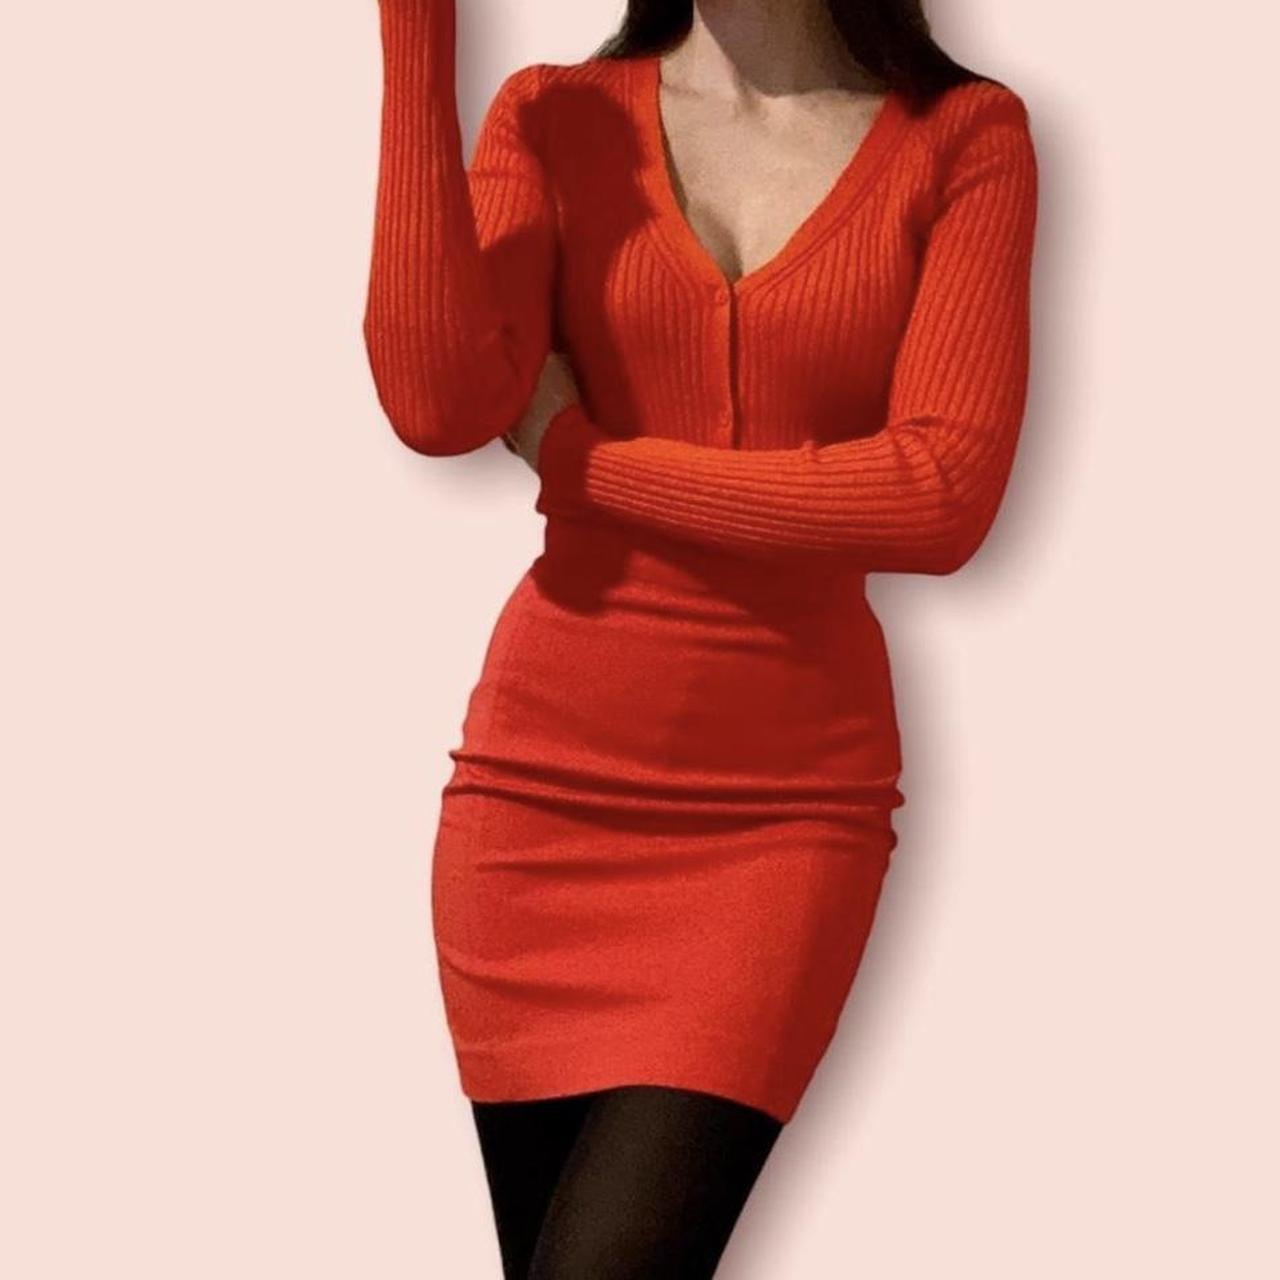 H&M Women's Red and Orange Skirt